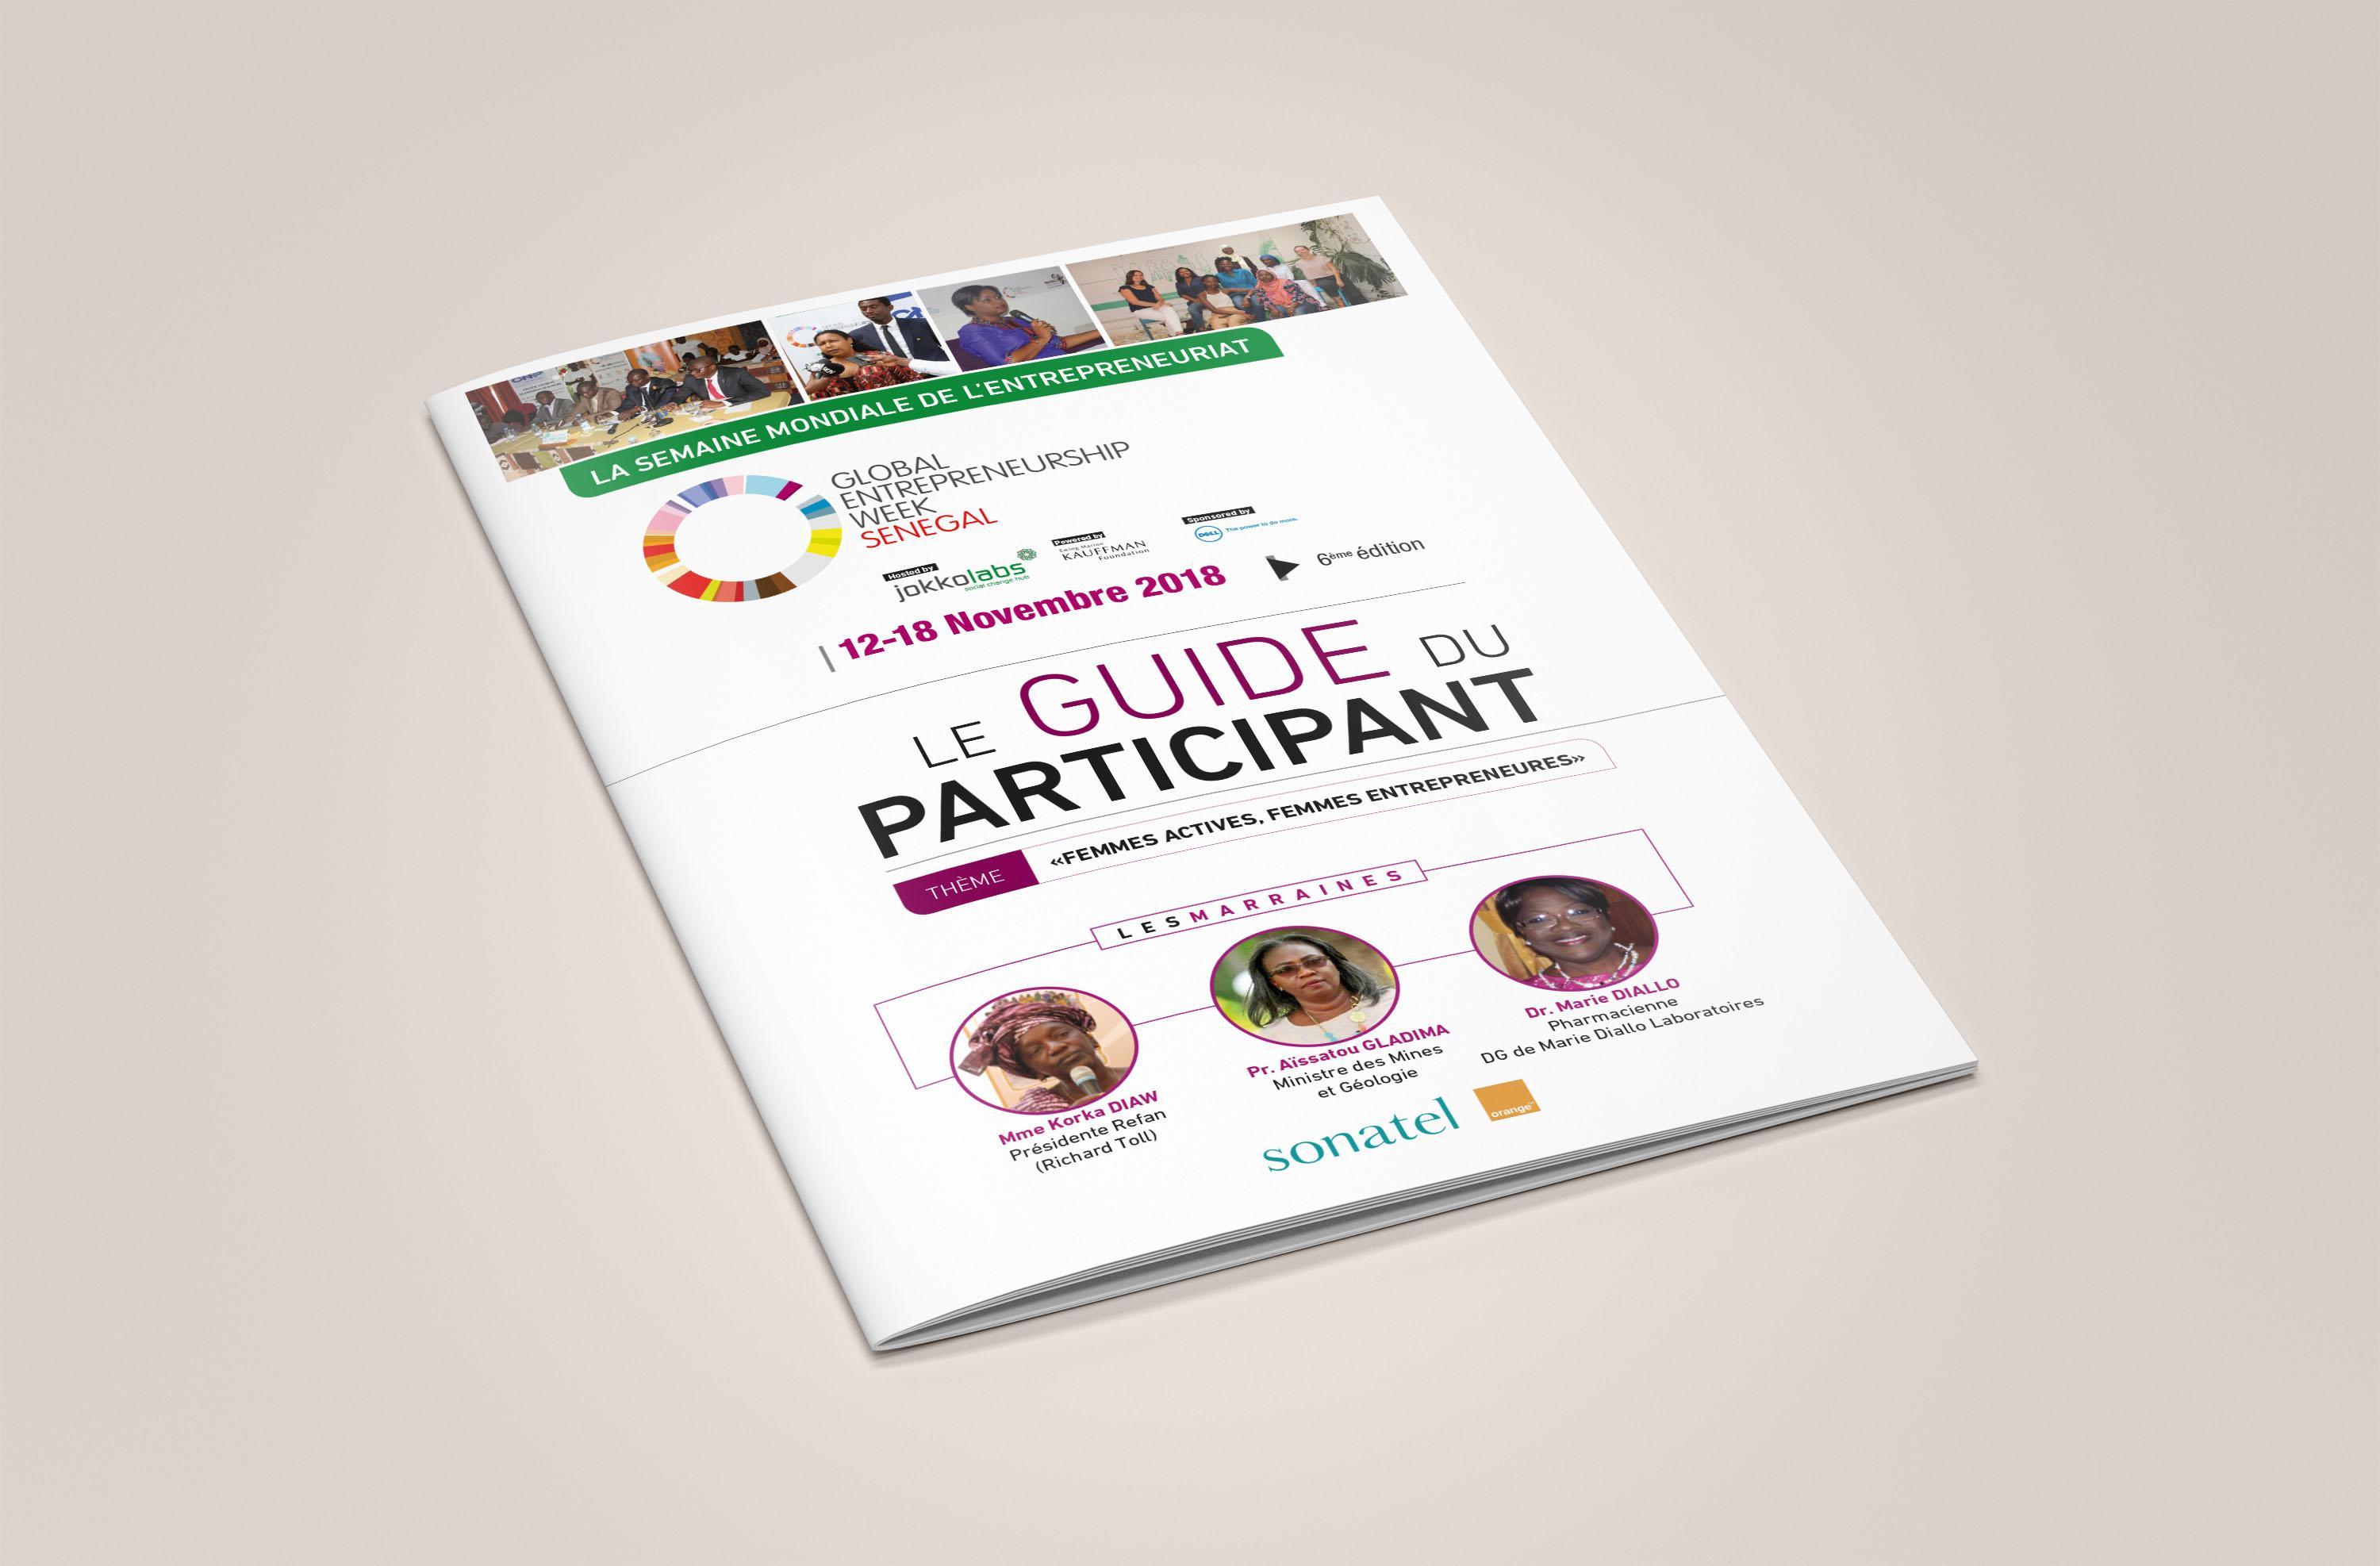 Brochure Le Guide du Participant - GEW